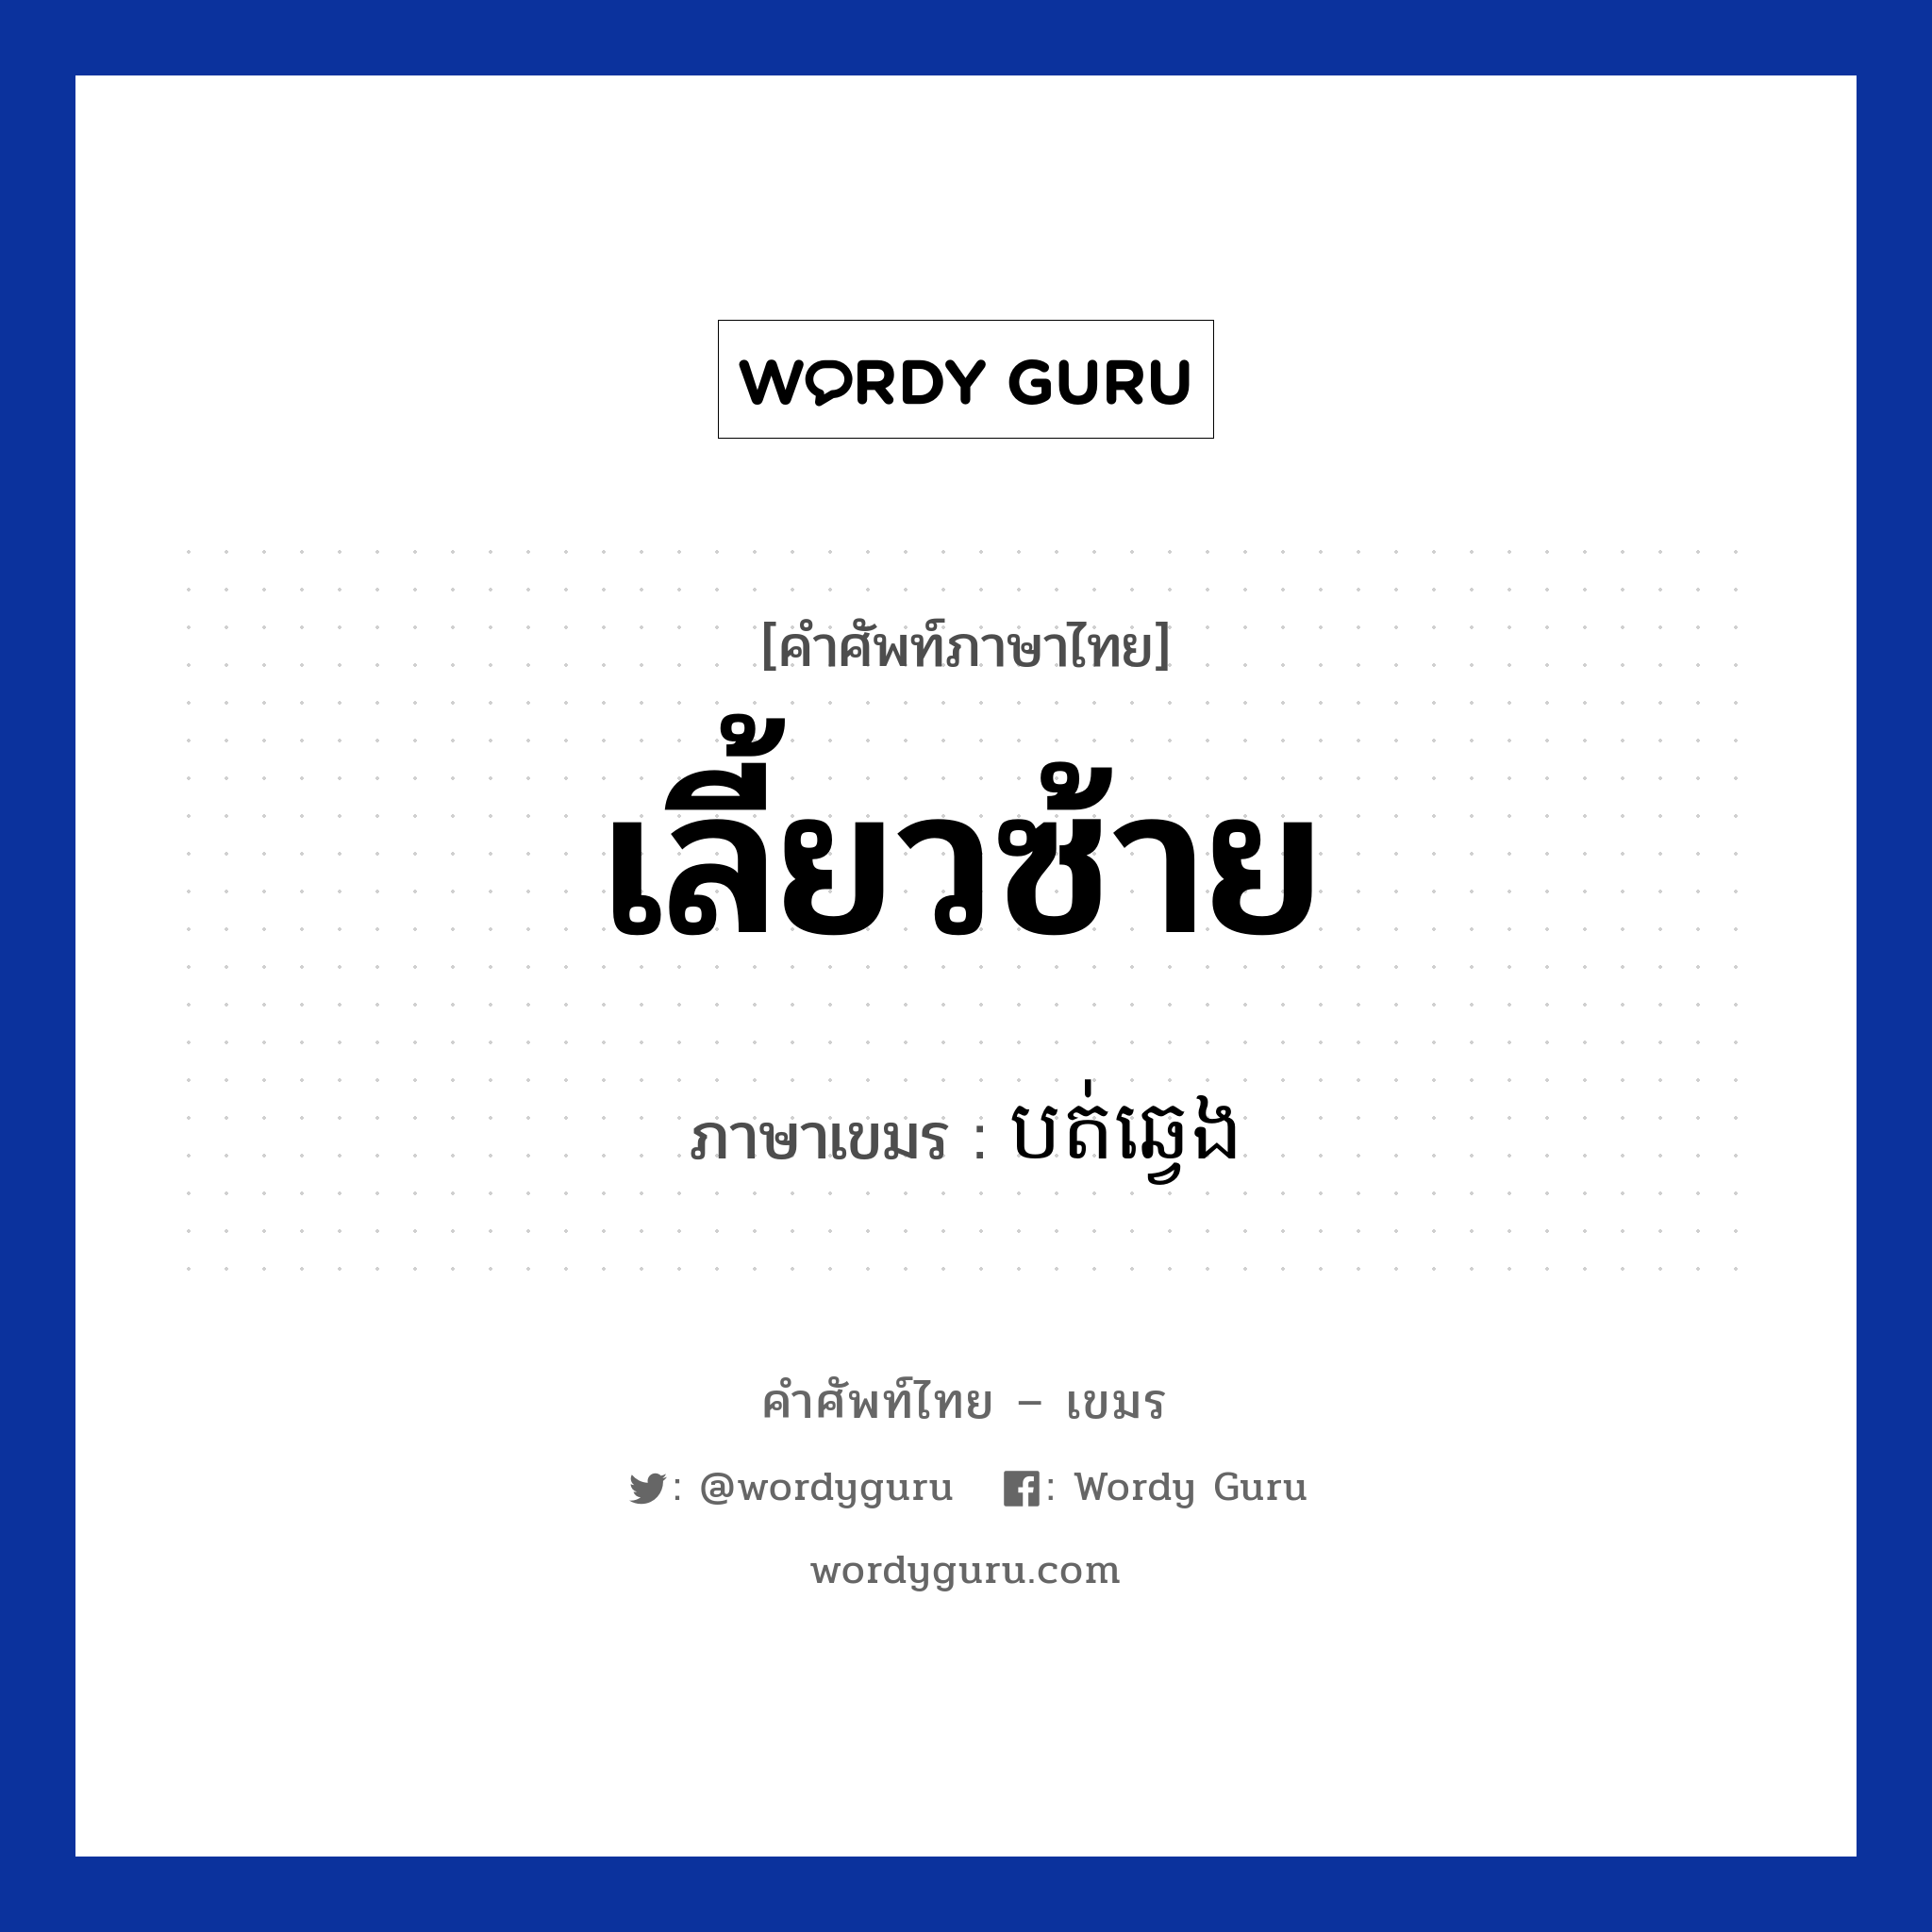 เลี้ยวซ้าย แปลว่า? คำศัพท์ในกลุ่มประเภท การเดินทาง, คำศัพท์ภาษาไทย - เขมร เลี้ยวซ้าย ภาษาเขมร បត់ឆ្វេង หมวด การเดินทาง Bot chveng หมวด การเดินทาง